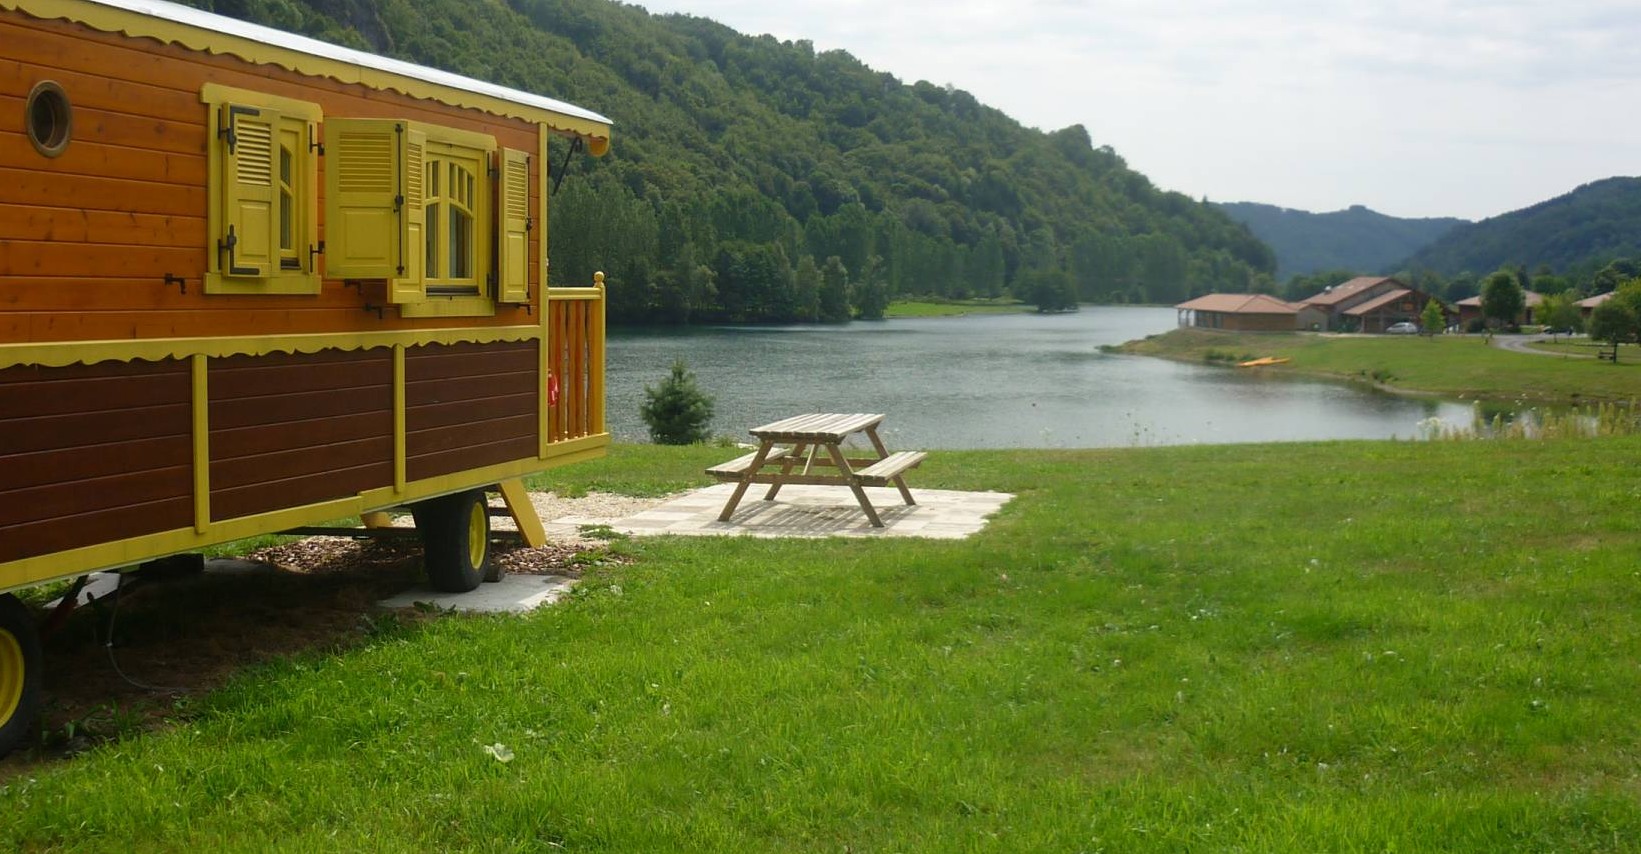 Vacances insolites en Auvergne : choisir une roulotte comme hébergement